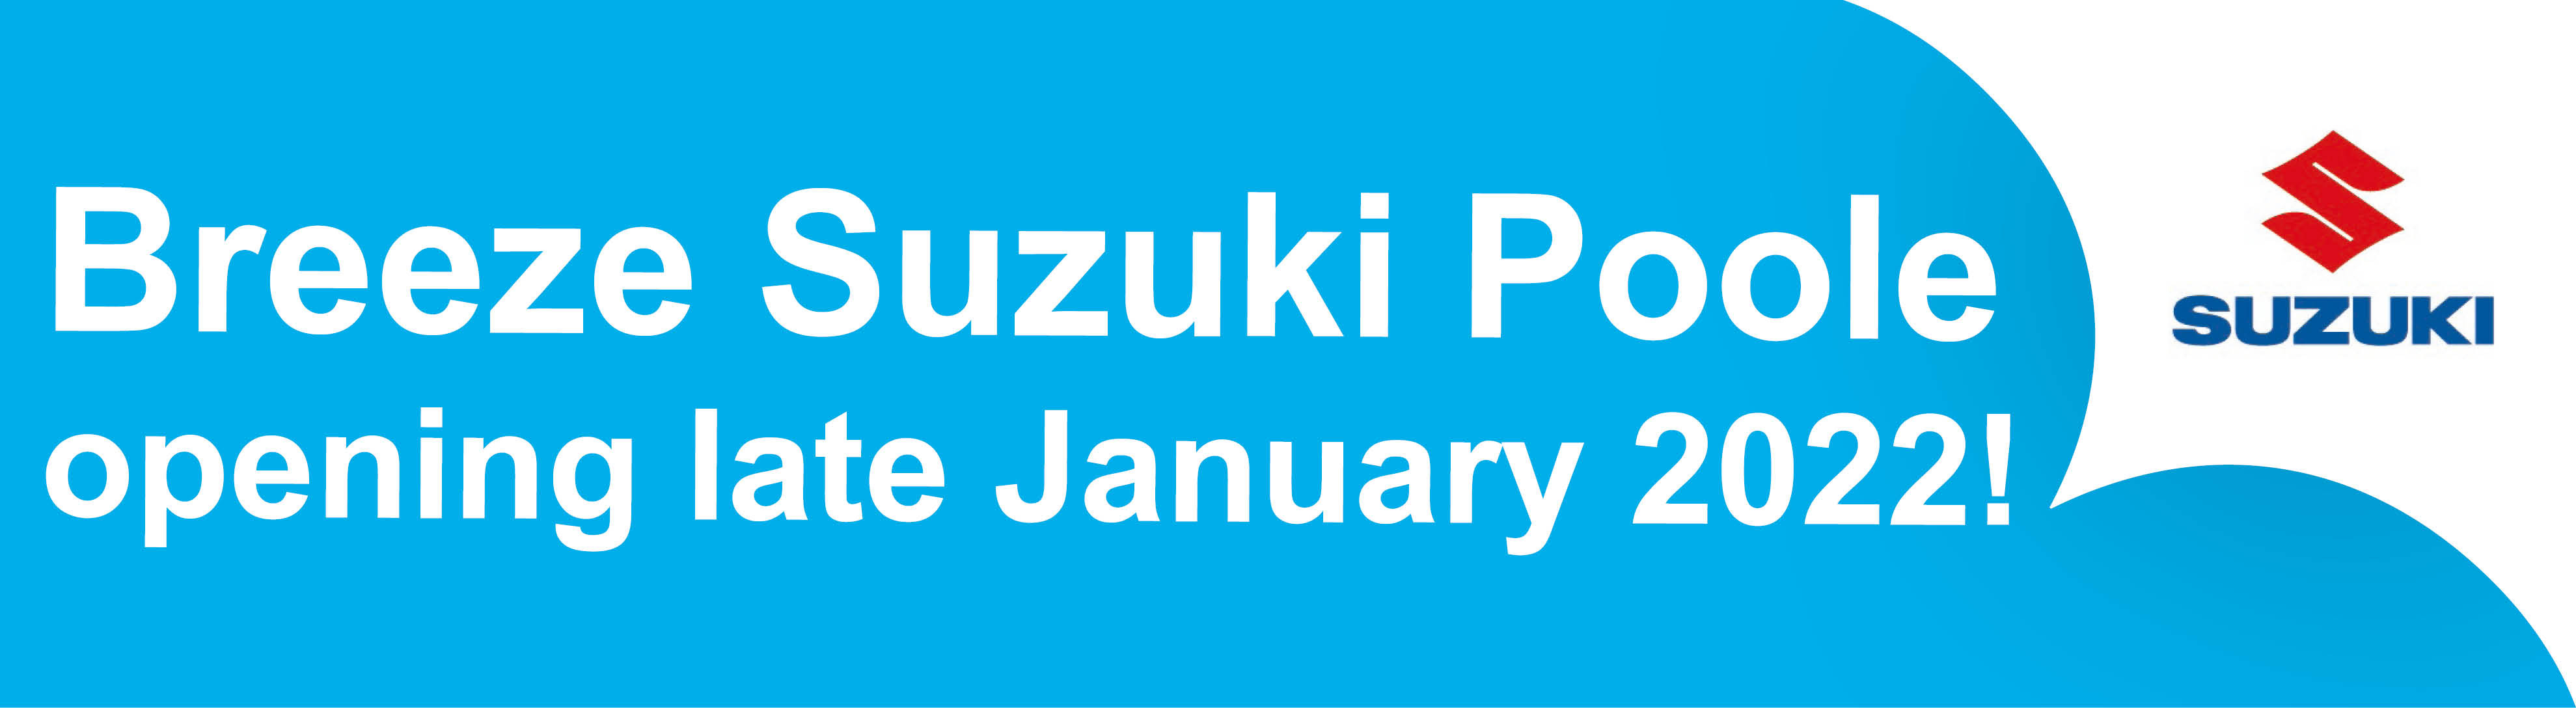 Breeze Suzuki Latest News